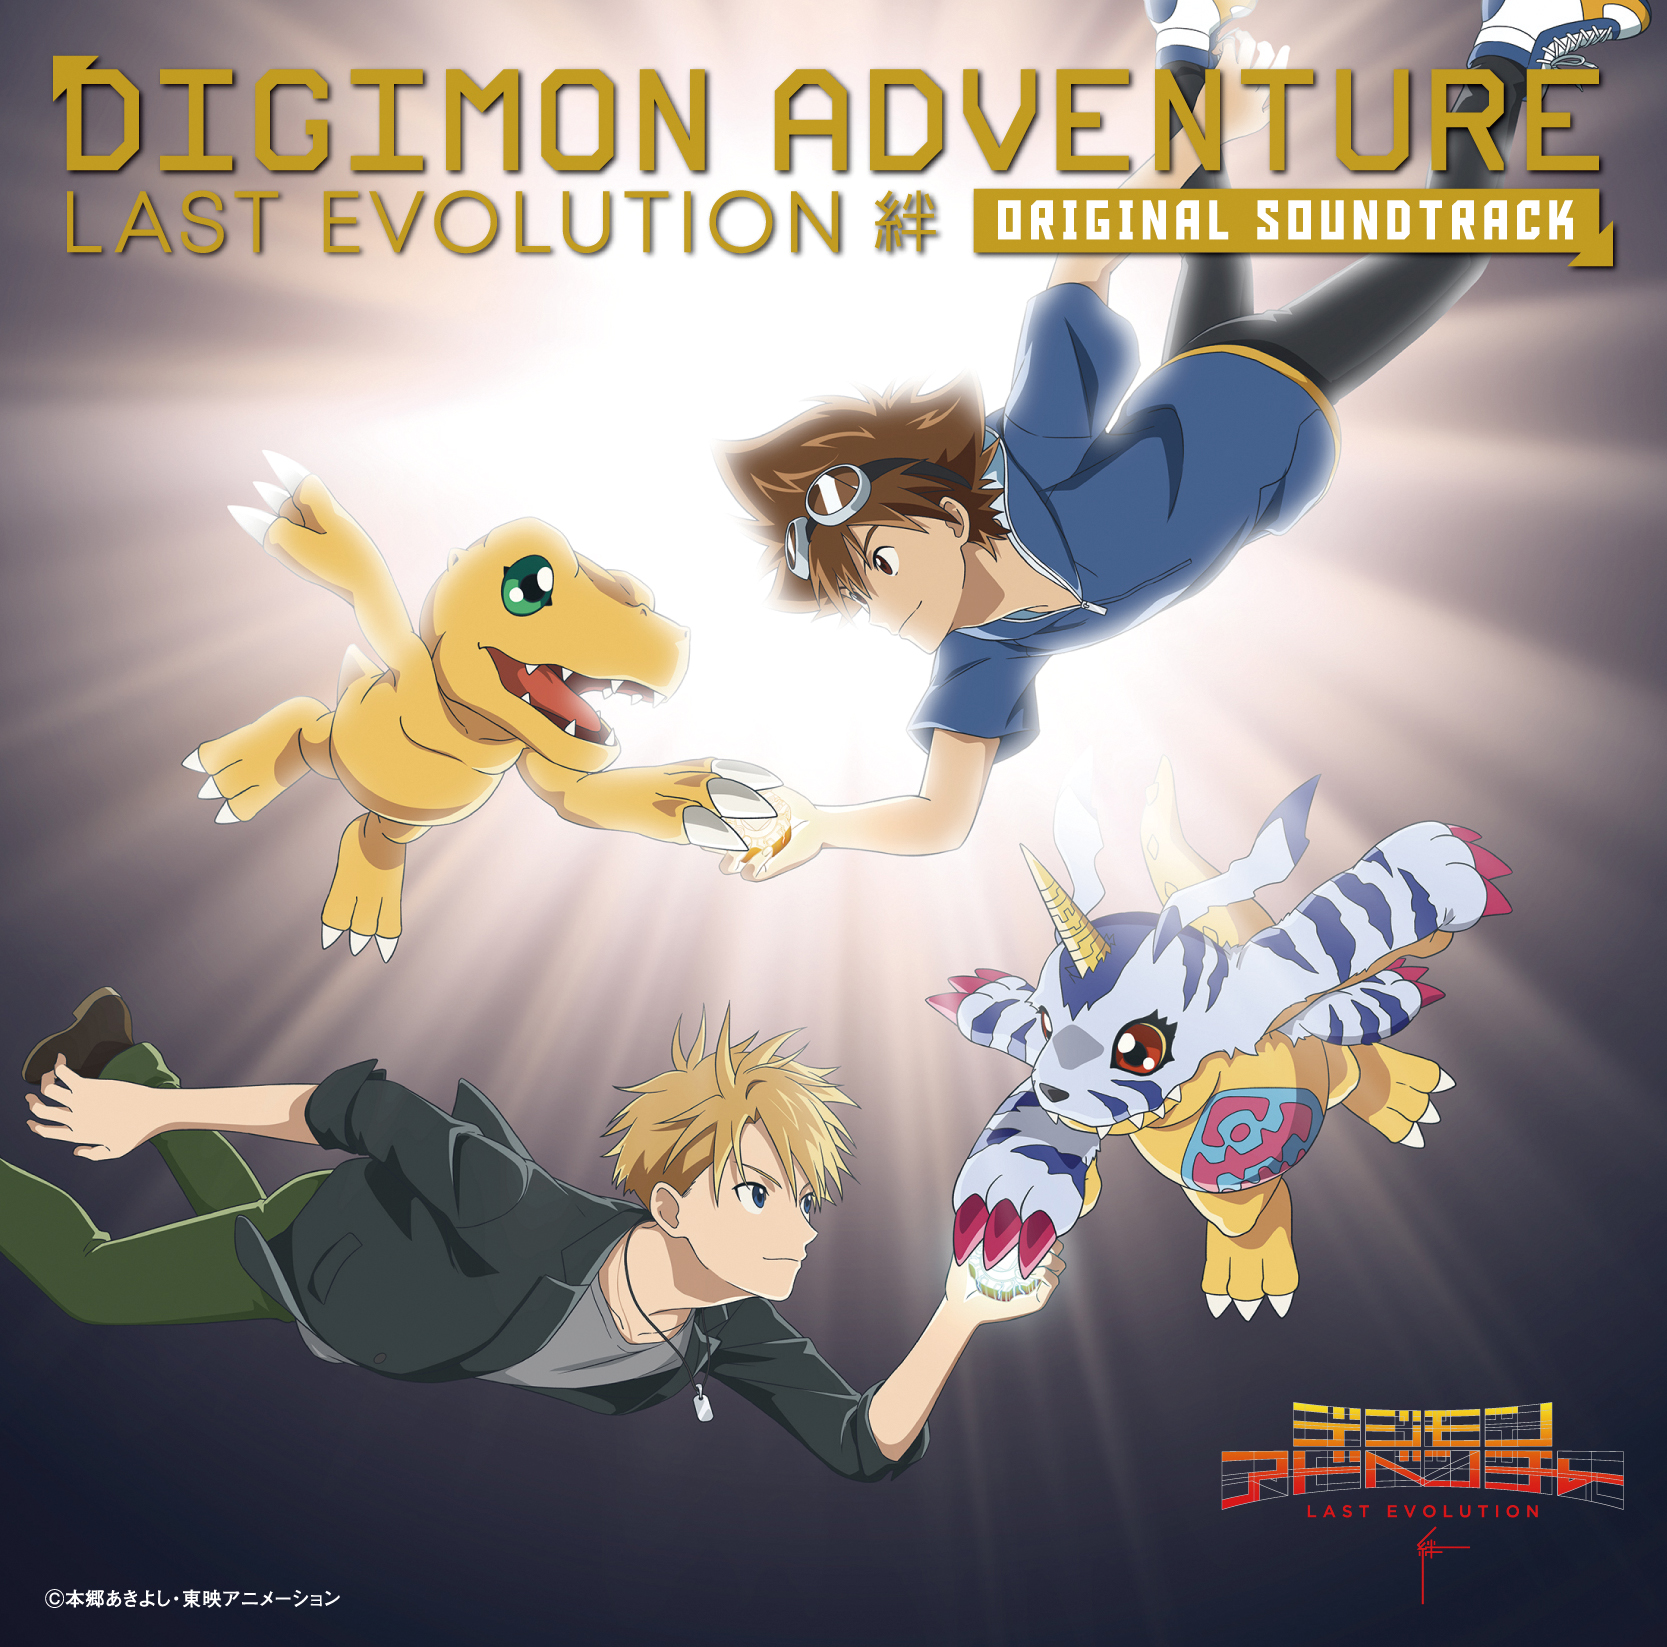 Digimon Adventure: Last Evolution Kizuna [DVD]